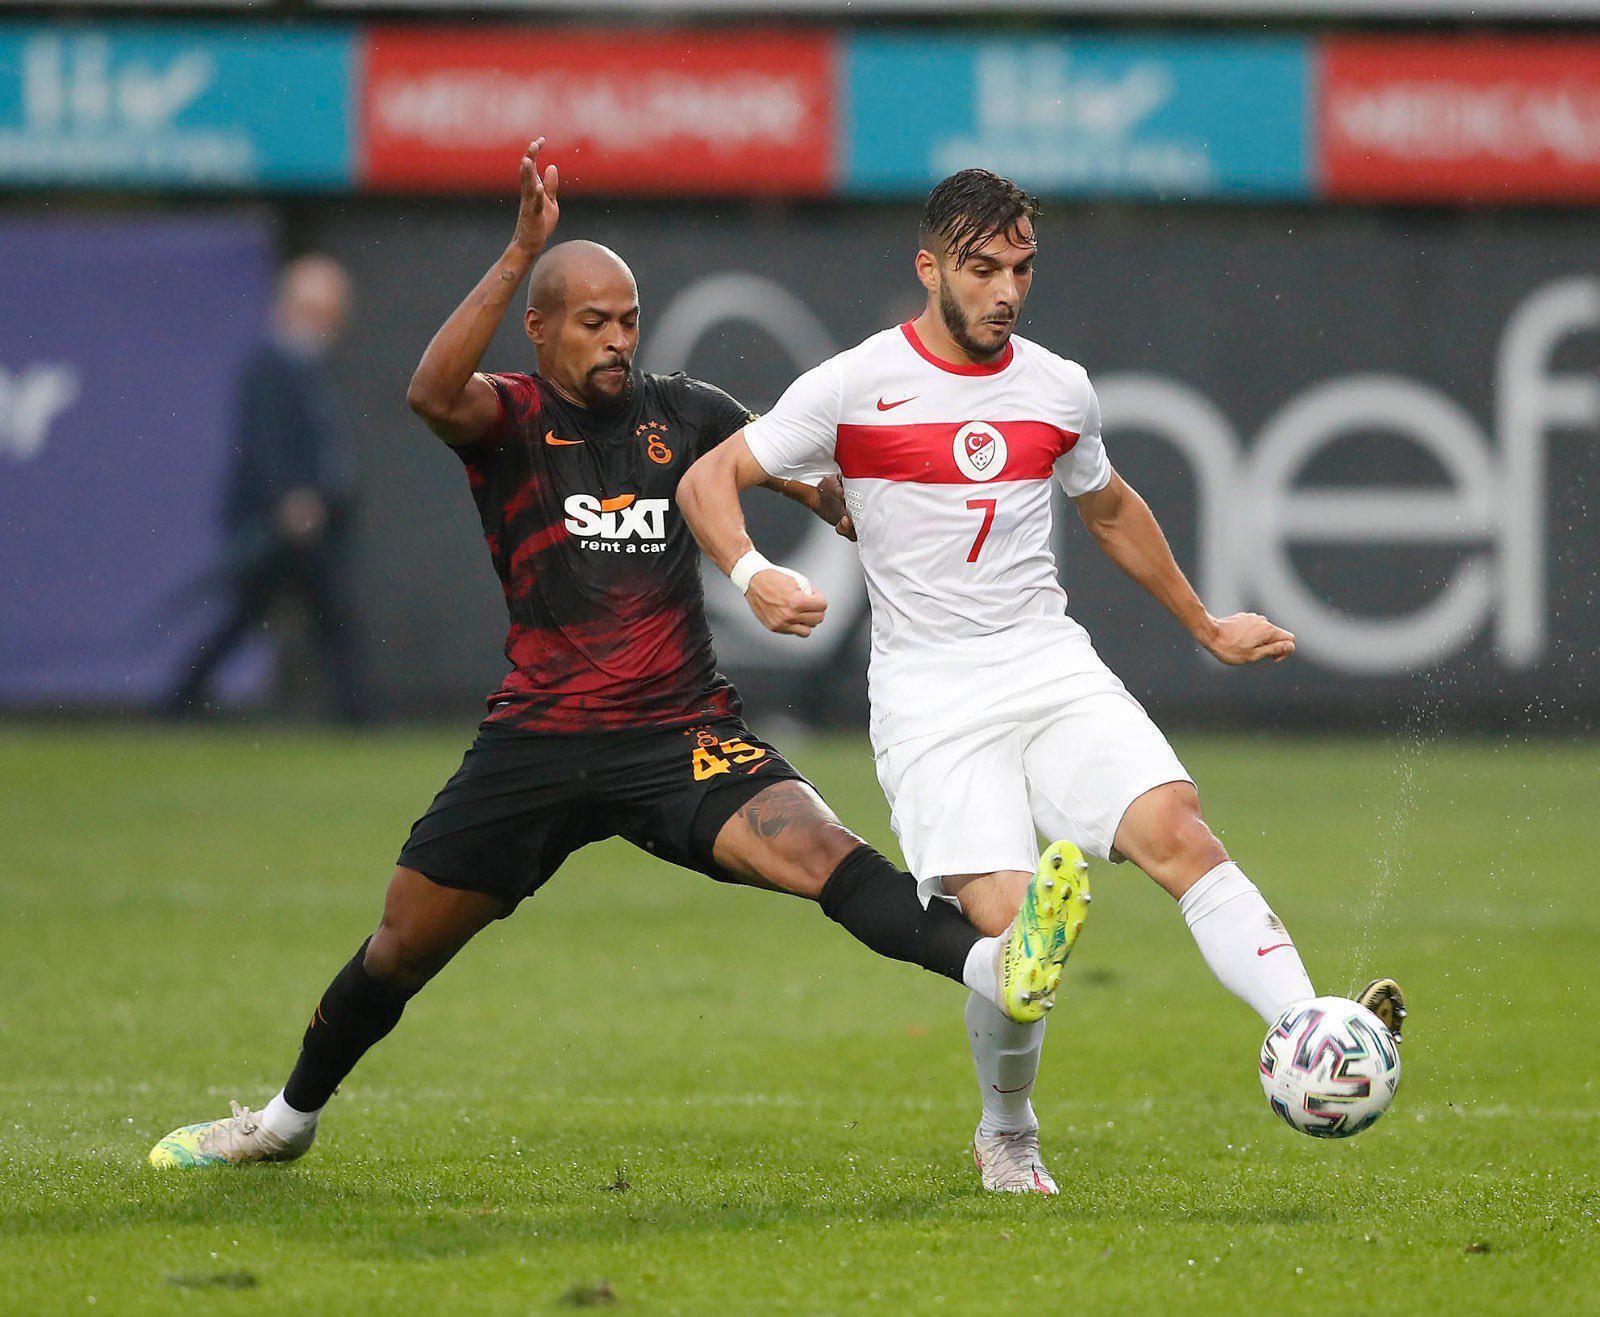 (ÖZET) Galatasaray - Ümit Milli Takımı maç sonucu: 0-0